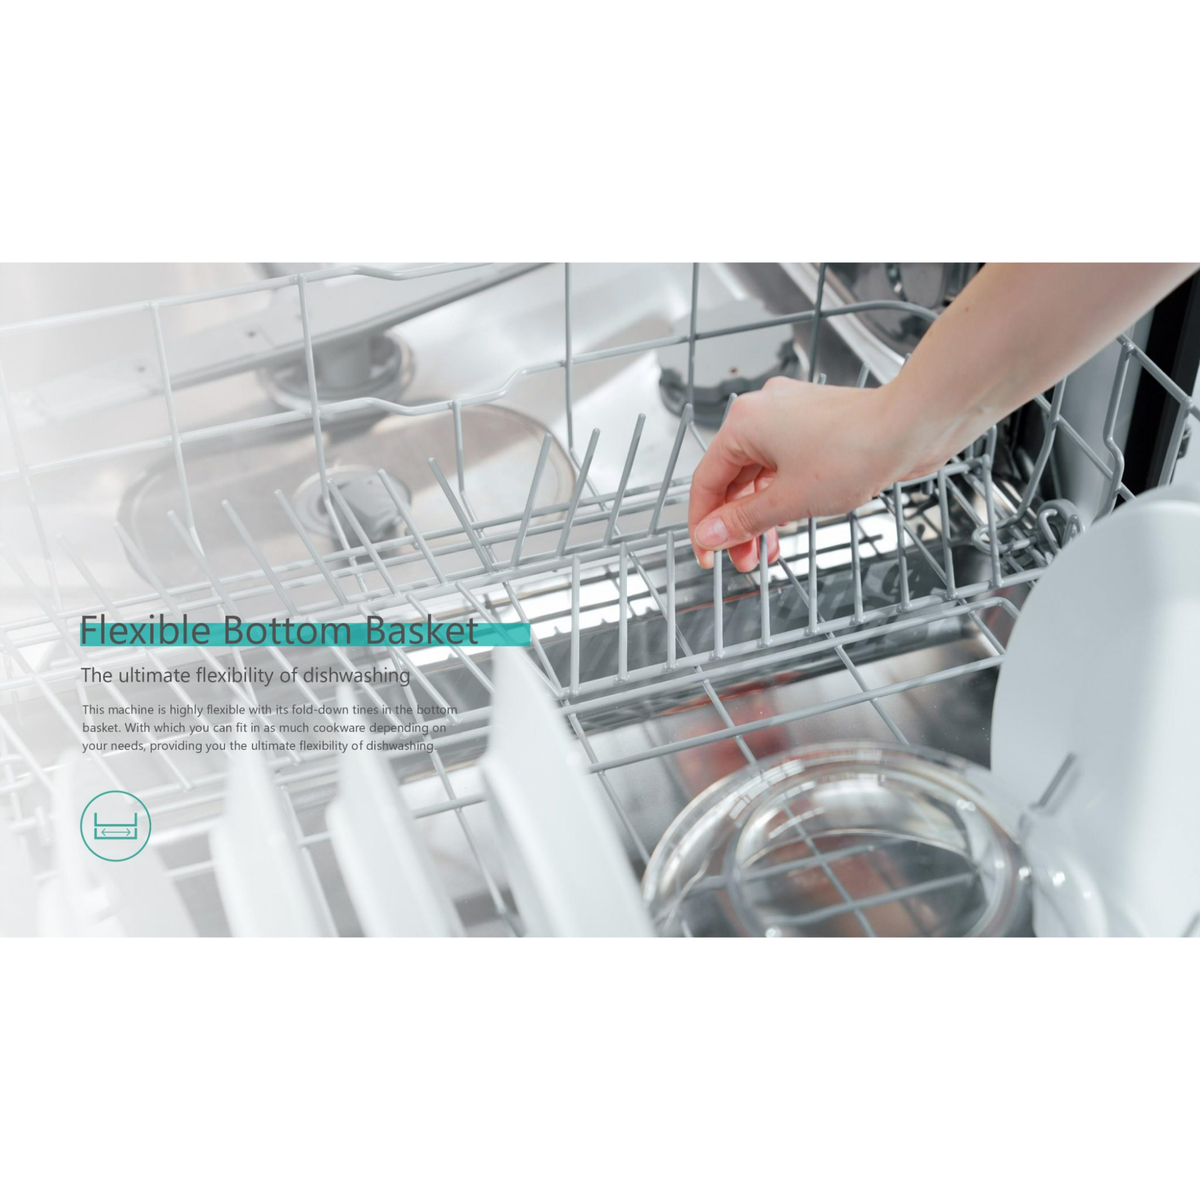 Hisense Freestanding Dishwasher, 60 cm, Silver, HS623E90X